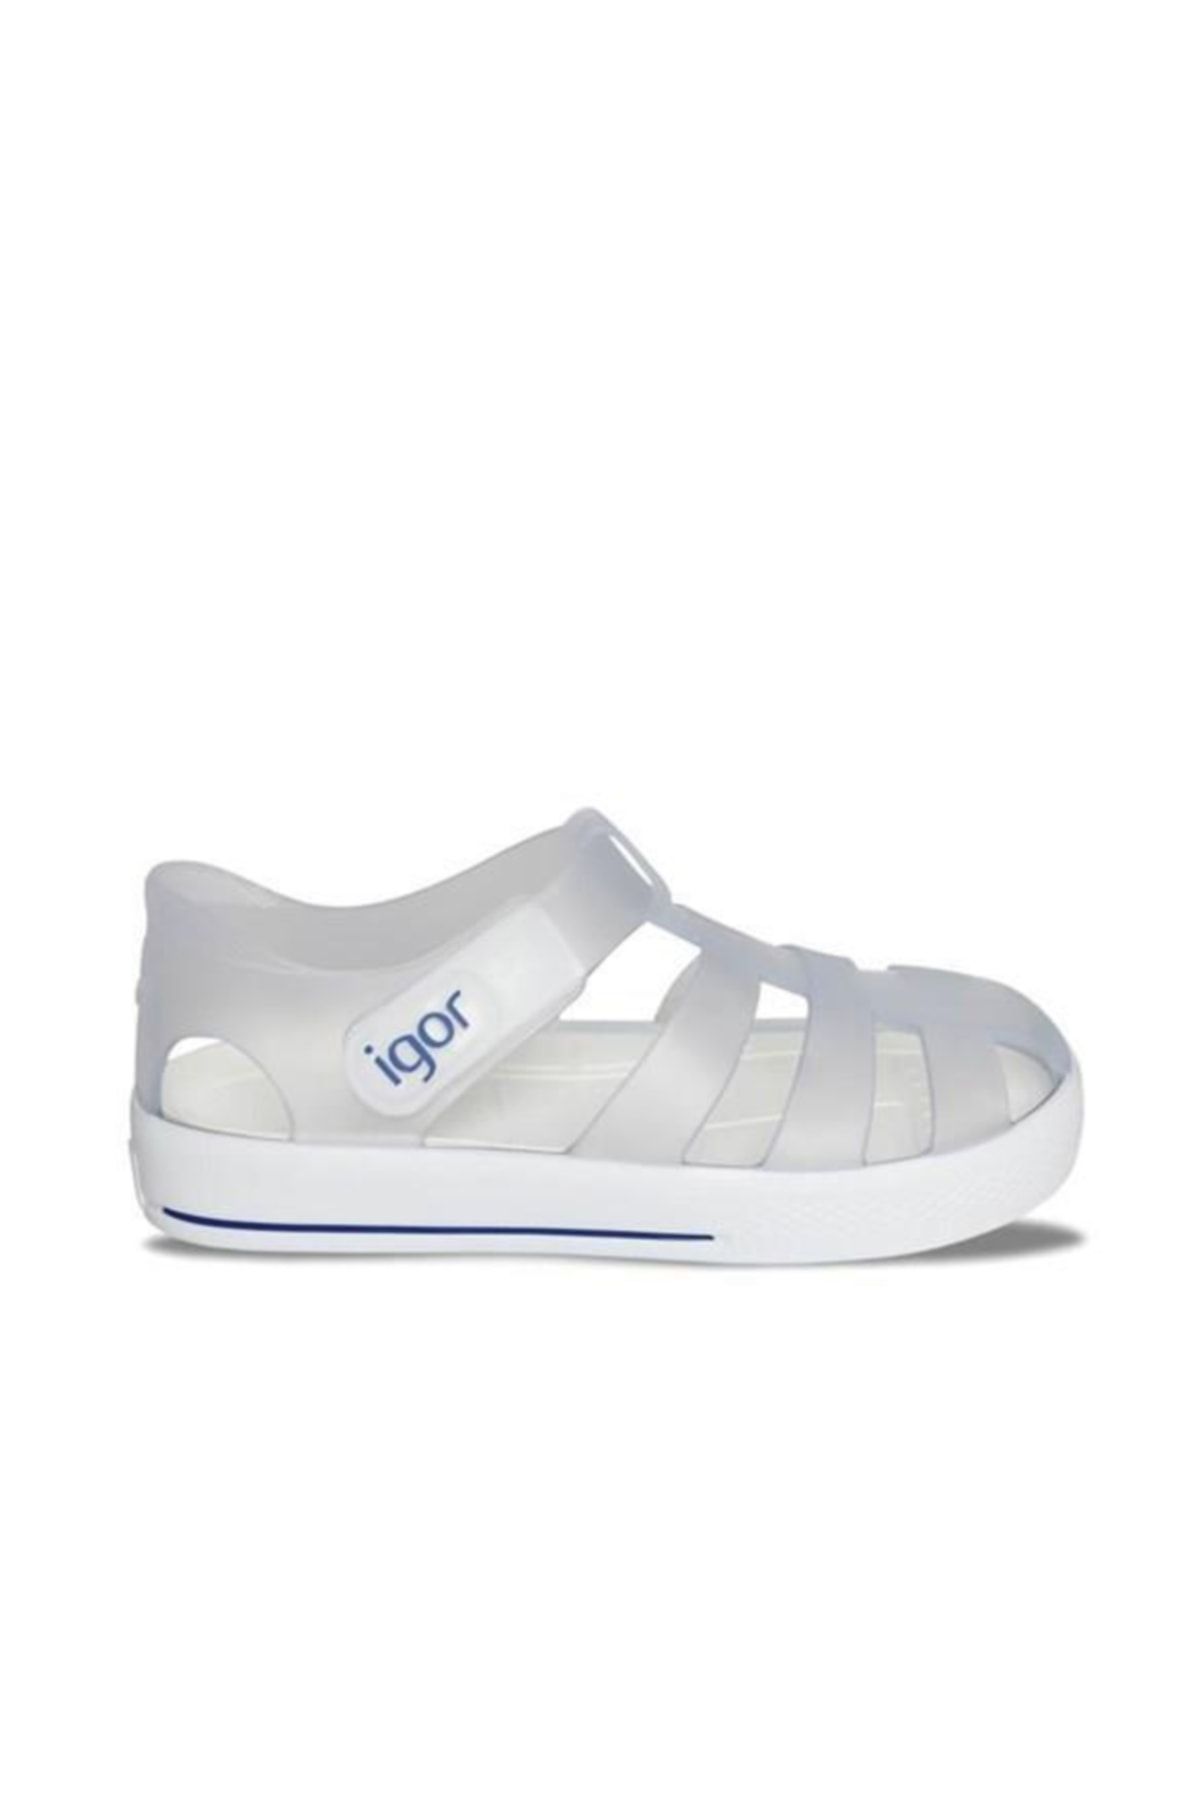 IGOR Star Bebek Çocuk Sandalet Ayakkabı Blanco Beyaz S10171